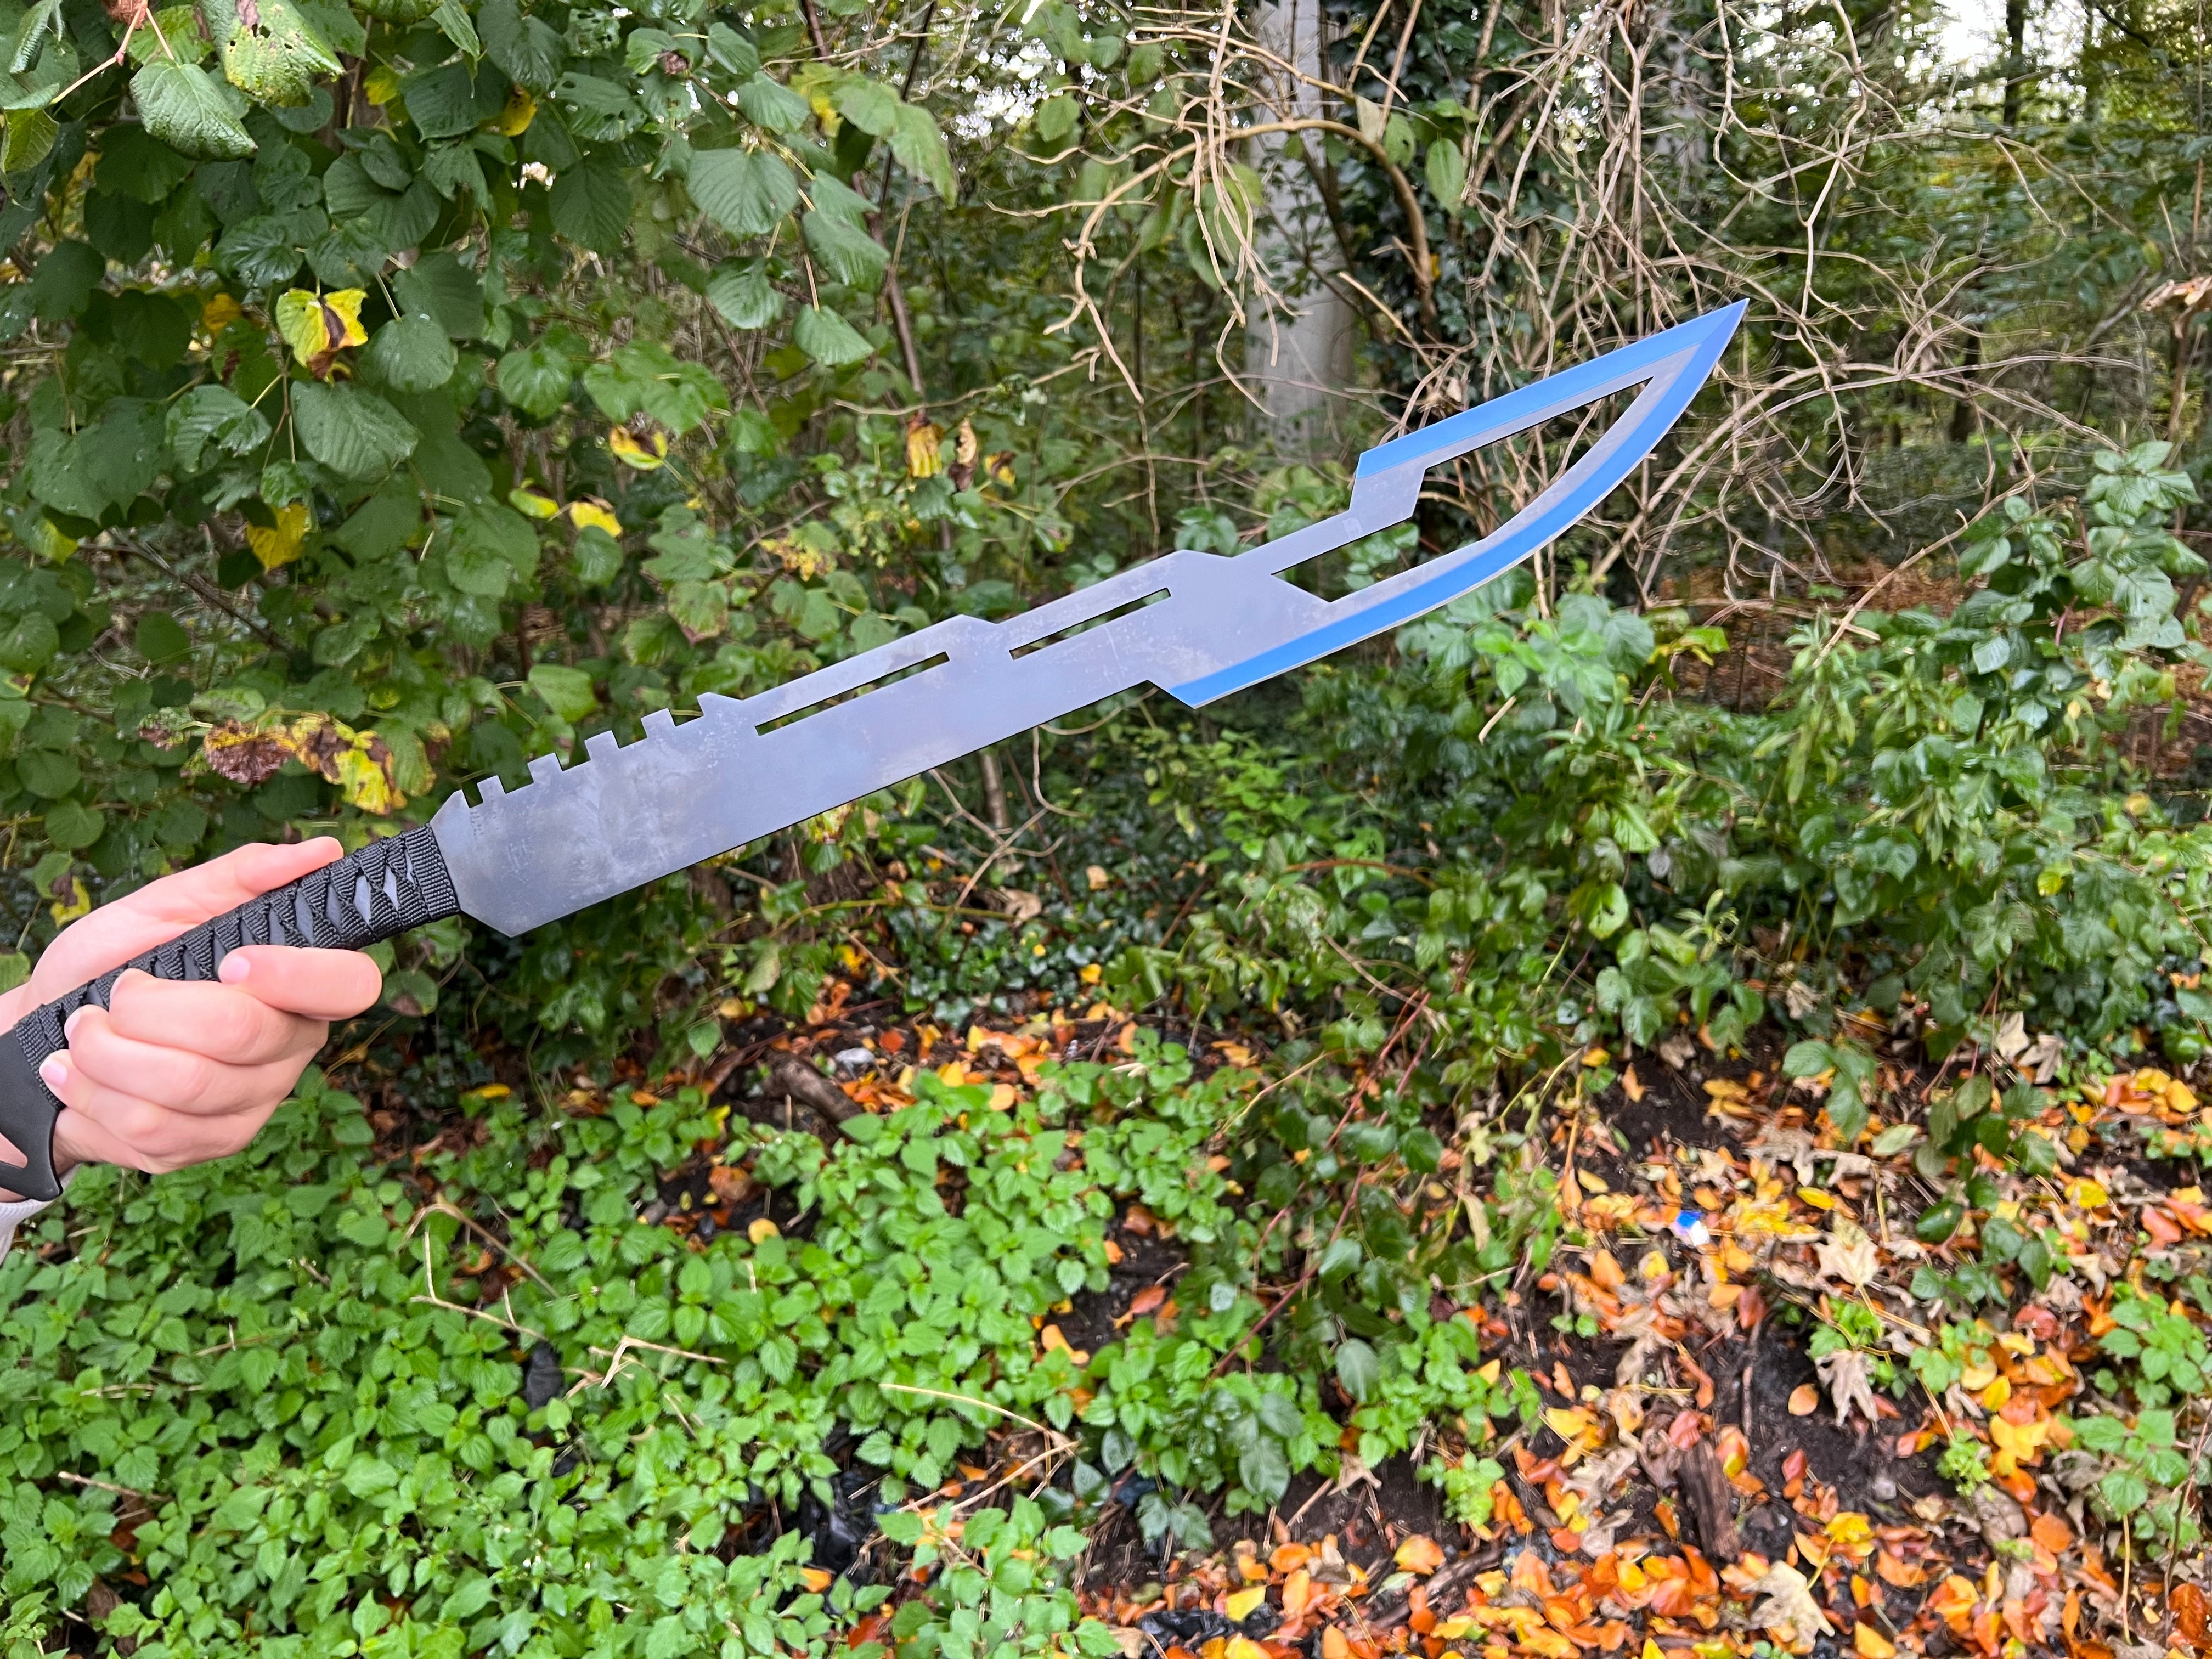 Kampfschwert "Azure Blade" – Traditionelles Rückenschwert mit Blau-Schwarz Beschichtung und Rückentragegurt